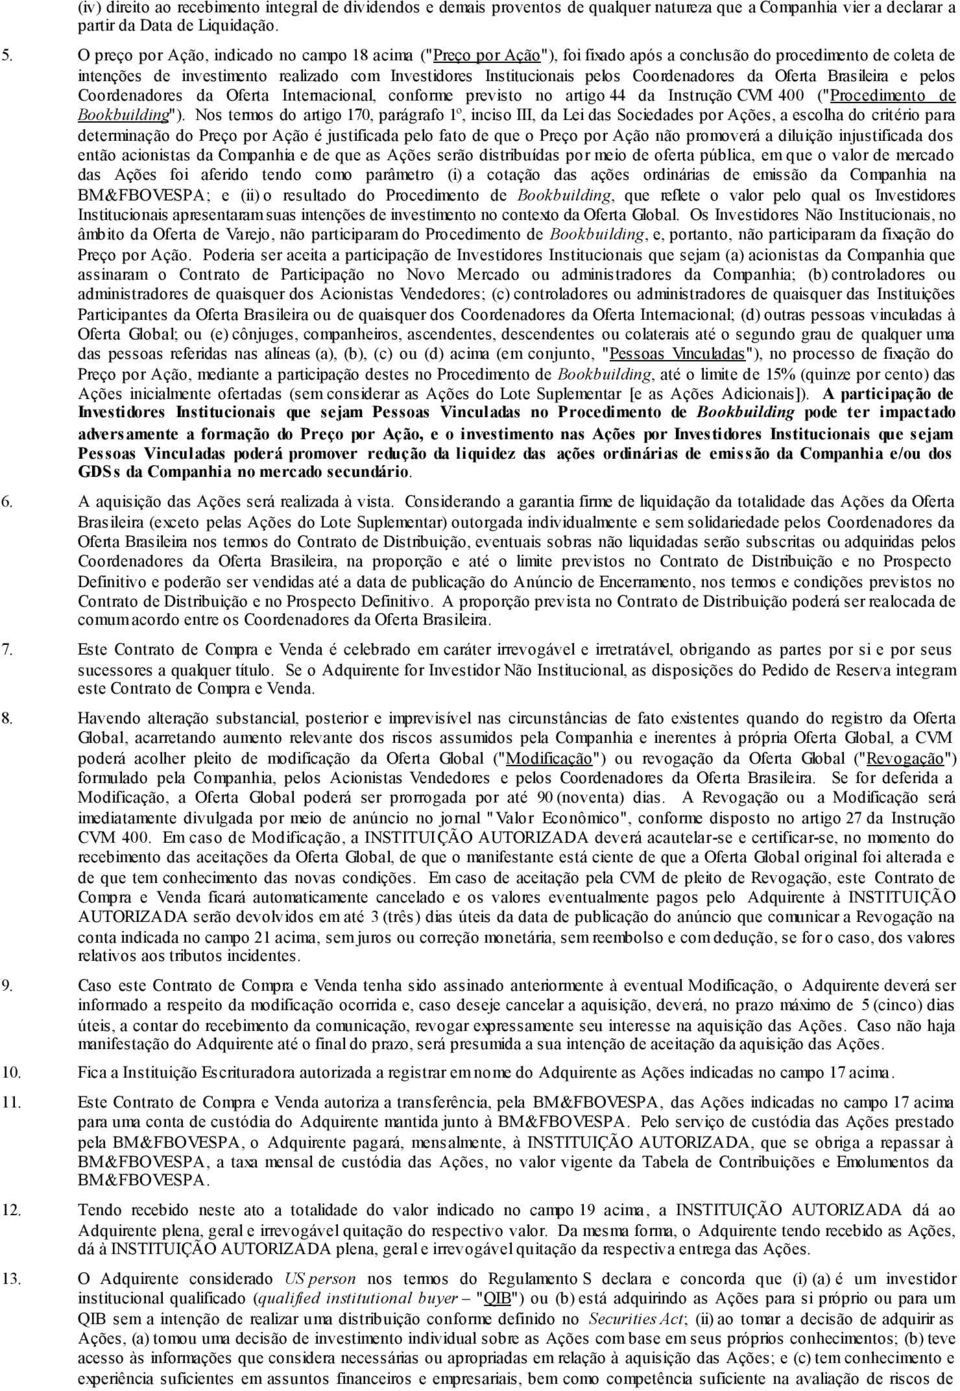 Coordenadores da Oferta Brasileira e pelos Coordenadores da Oferta Internacional, conforme previsto no artigo 44 da Instrução CVM 400 ("Procedimento de Bookbuilding").